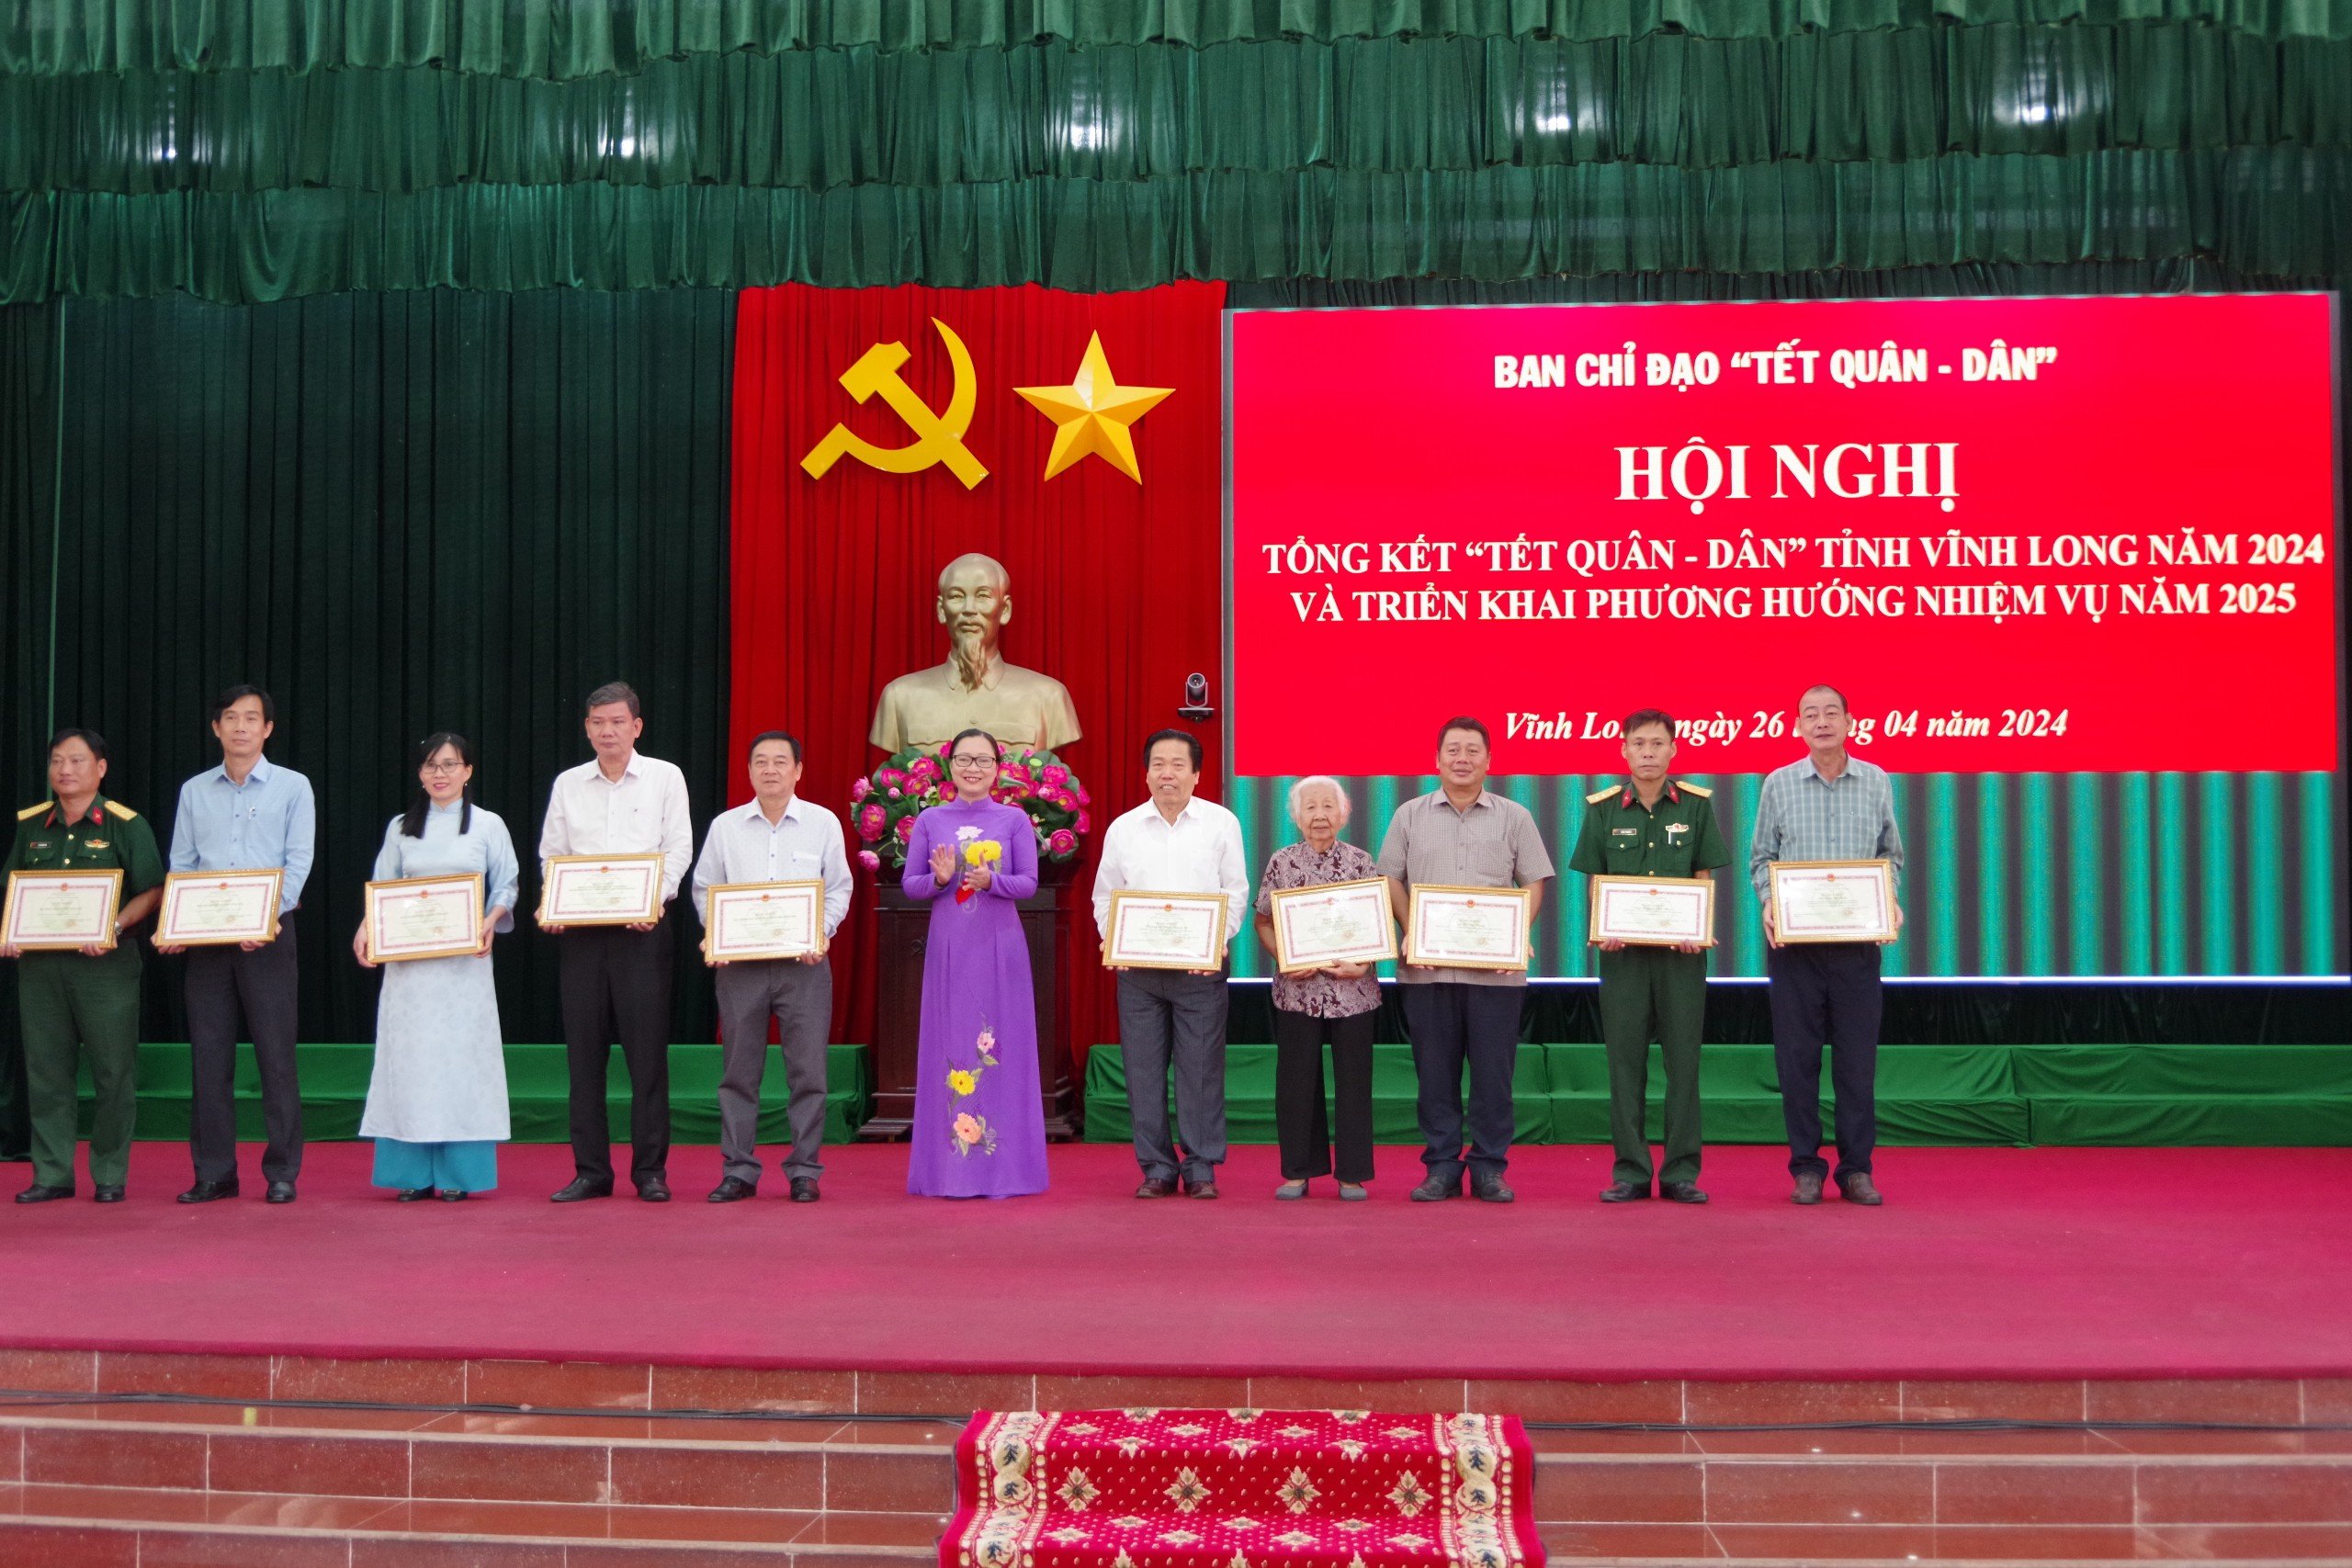 Phó Chủ tịch UBND tỉnh- Nguyễn Thị Quyên Thanh tặng bằng khen của UBND tỉnh cho các cá nhân có thành tích xuất sắc trong tổ chức Tết Quân dân năm 2024.